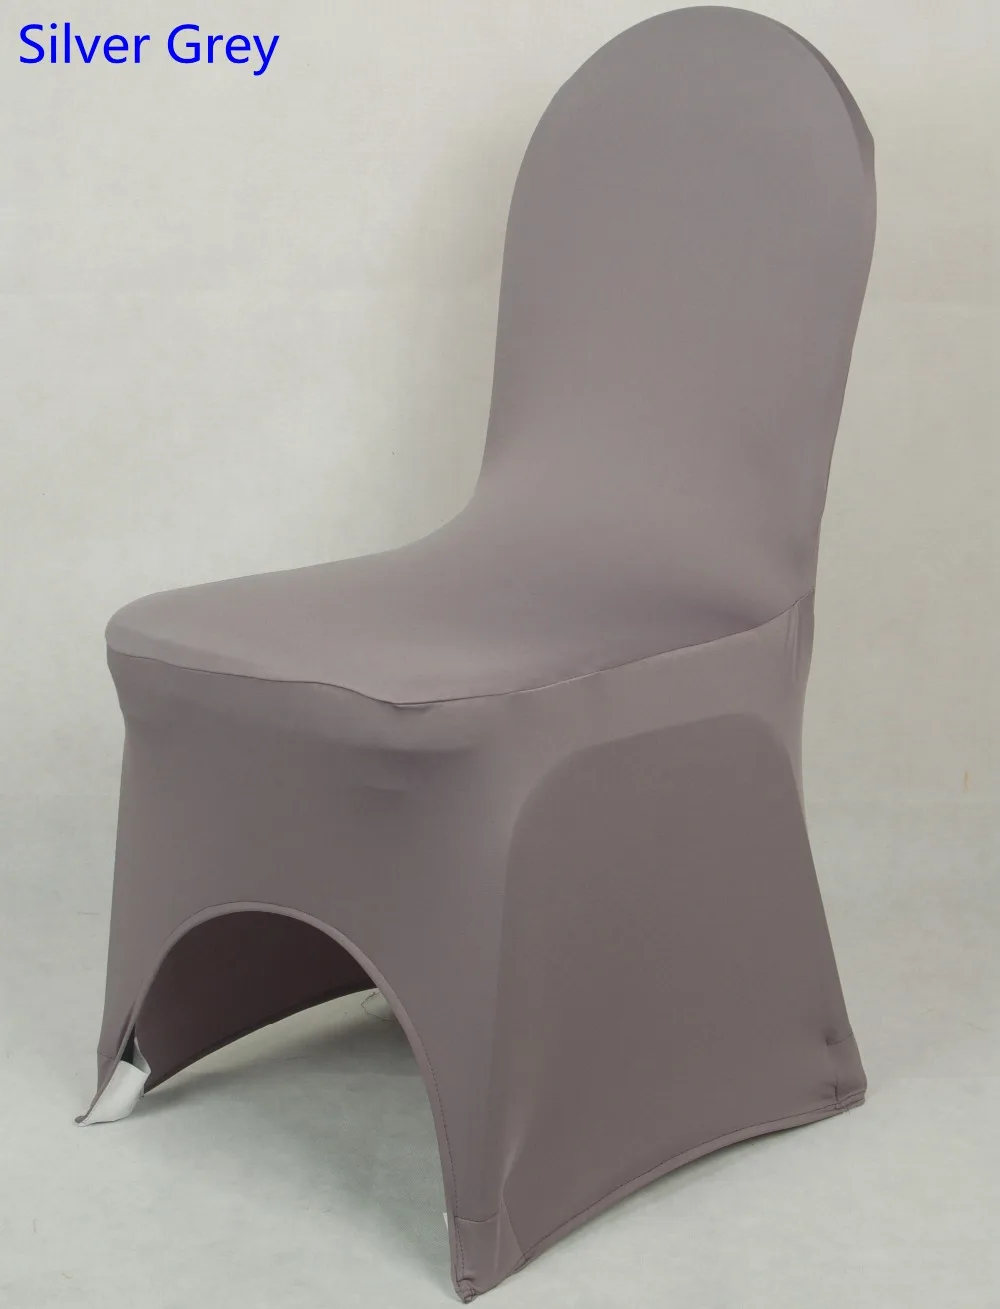 

Чехол для стула серебристо-серого цвета, Универсальный китайский чехол из лайкры для стула, обеденный стул, кухонный толстый моющийся